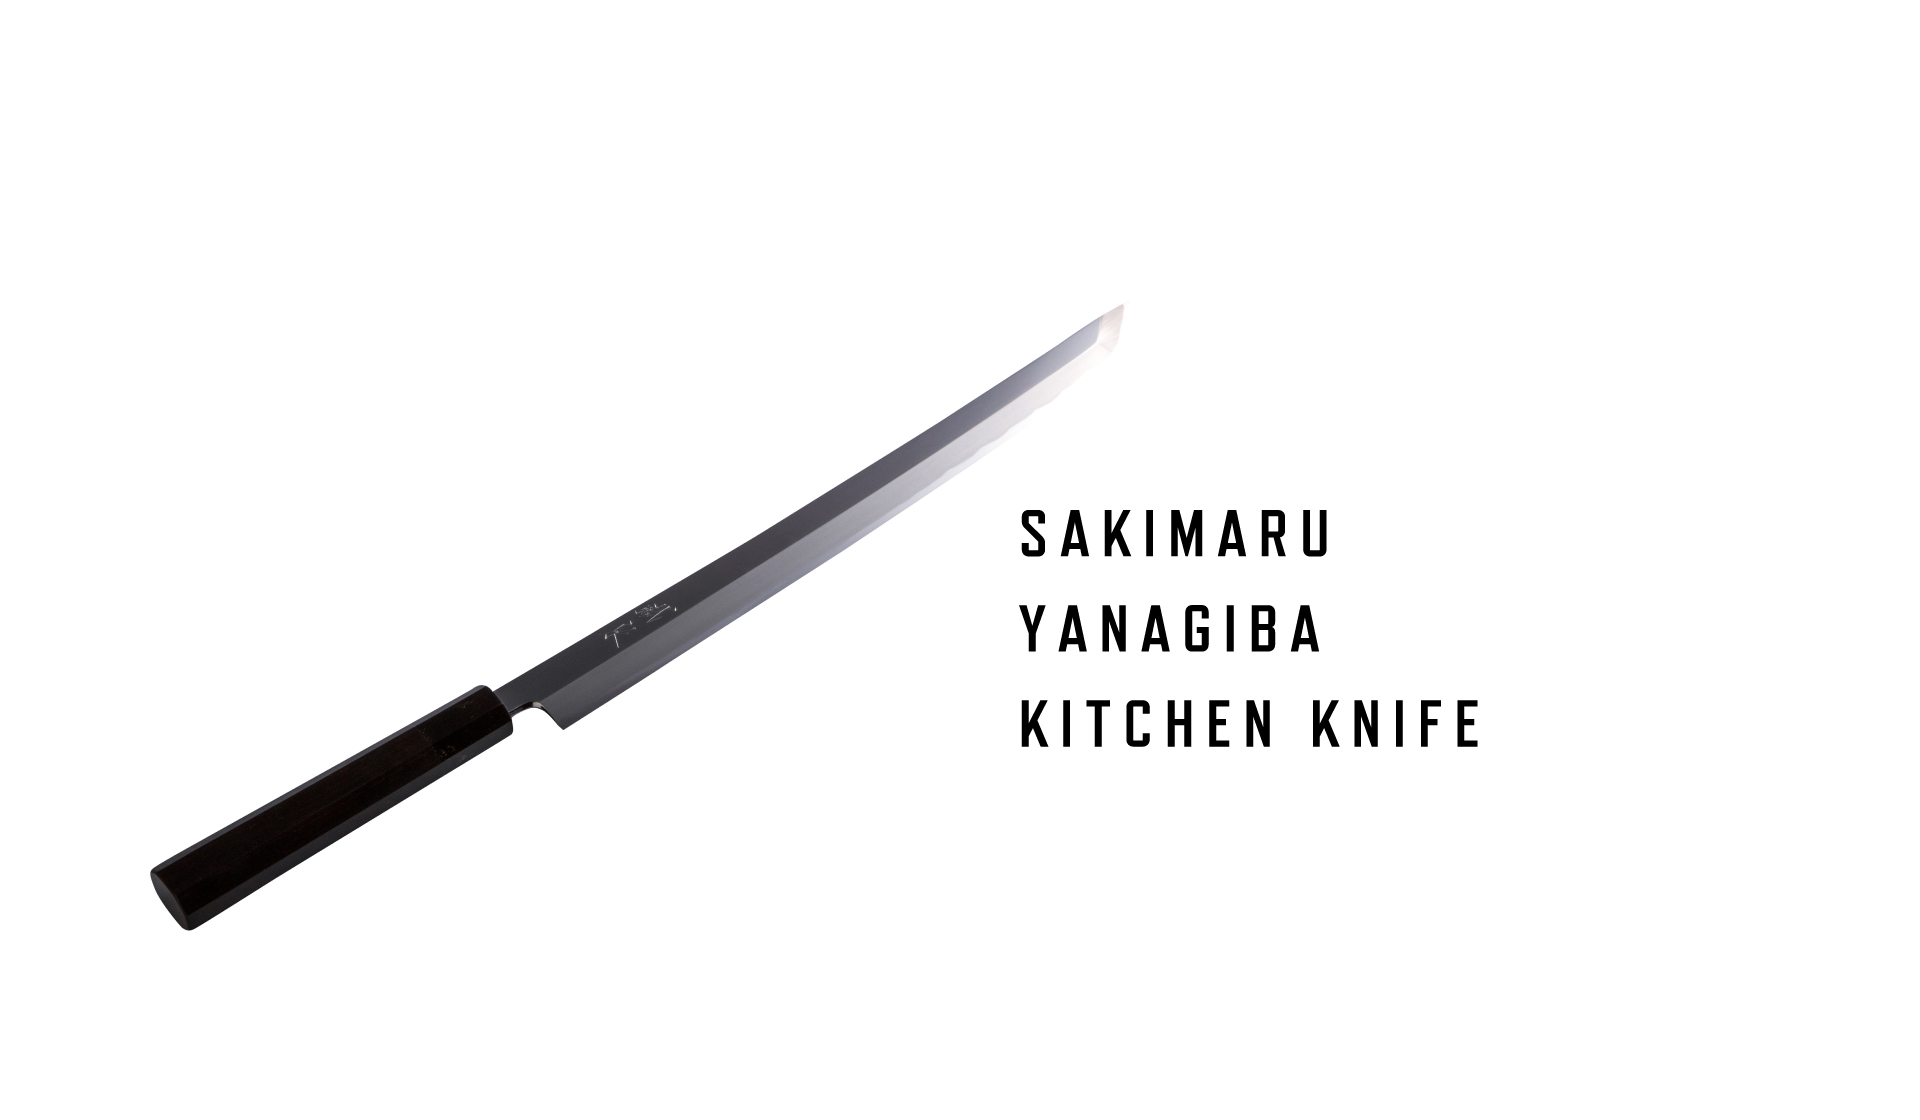 SAKIMARU YANAGIBA KITCHEN KNIFE